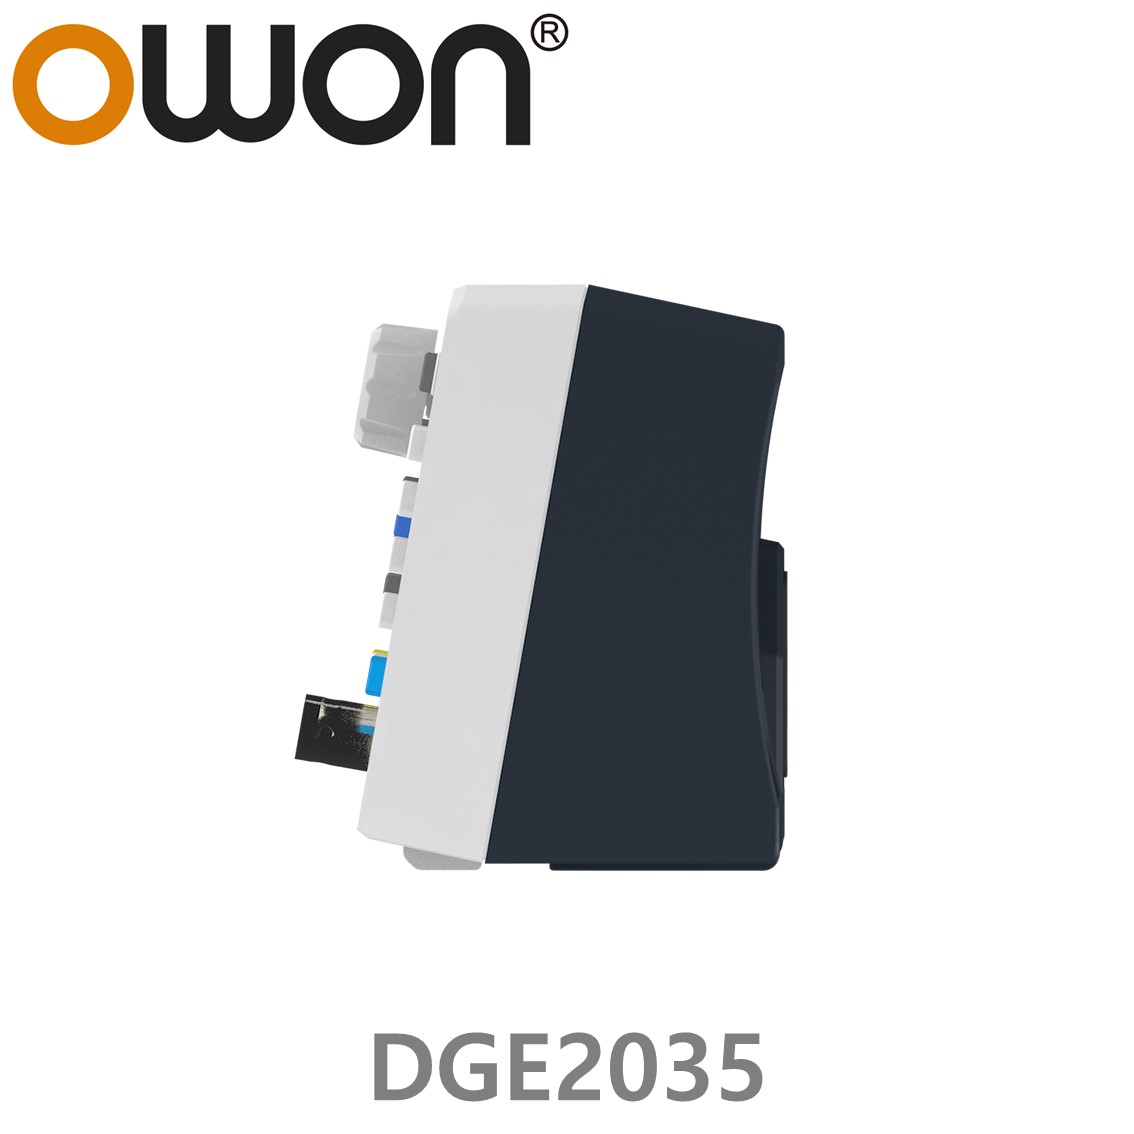 [ OWON ] DGE2035 임의 파형발생기 2CH, 35MHz, 125MS/s, 14Bits